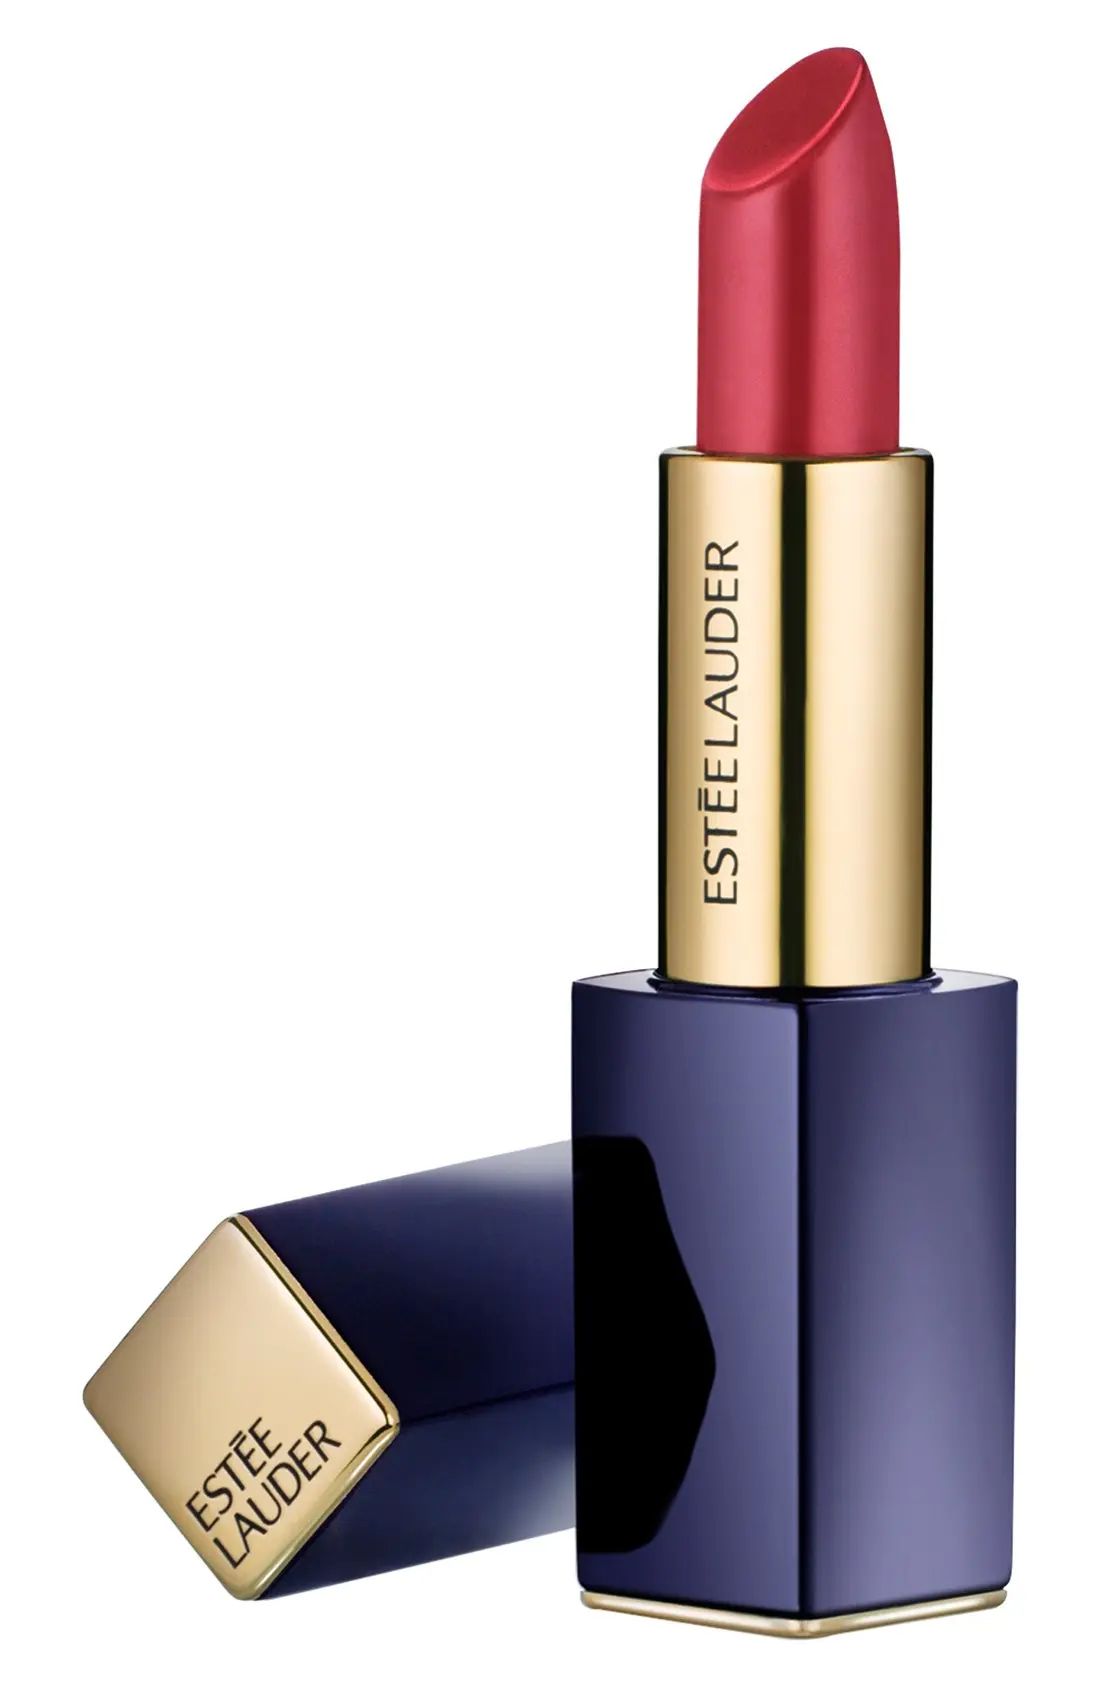 Estee Lauder Pure Color Envy Sculpting Lipstick - Tumultuous Pink | Nordstrom